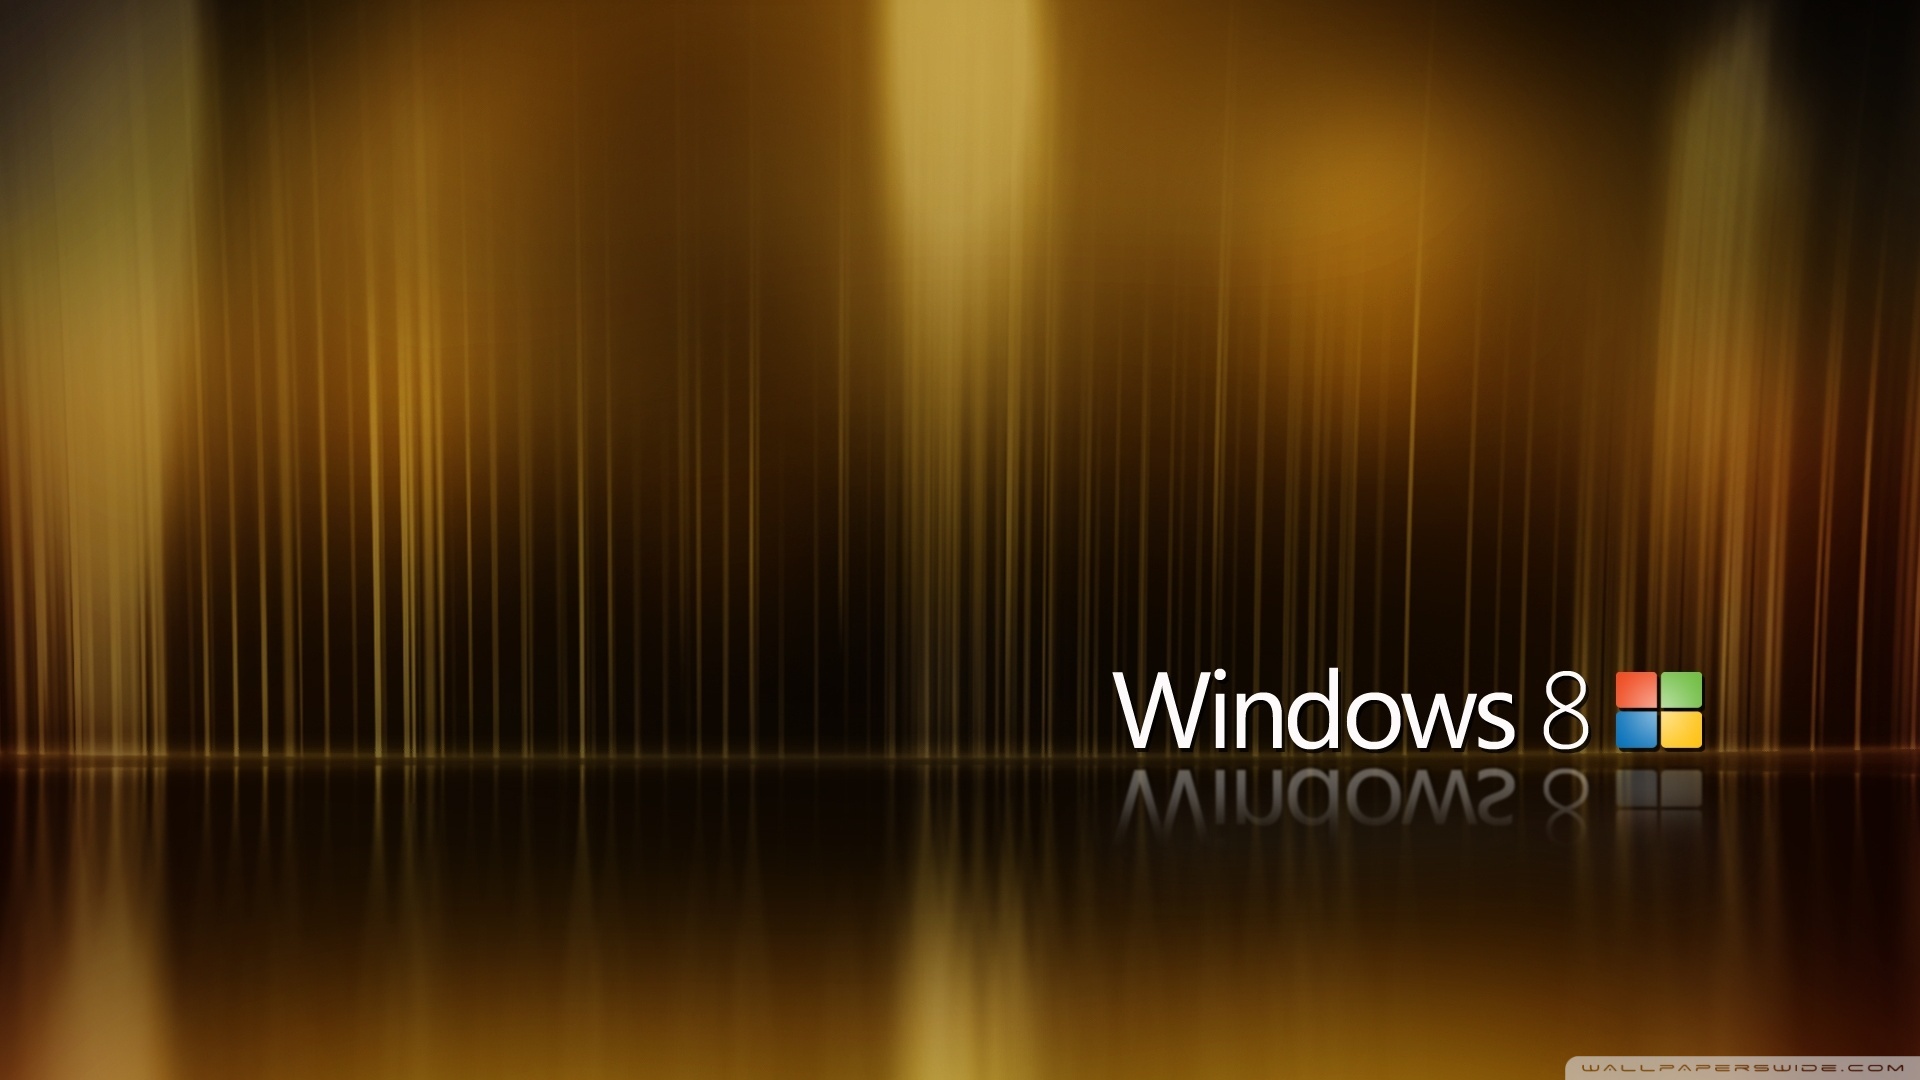 windows 8.1 wallpaper themen,betrachtung,licht,text,gelb,himmel